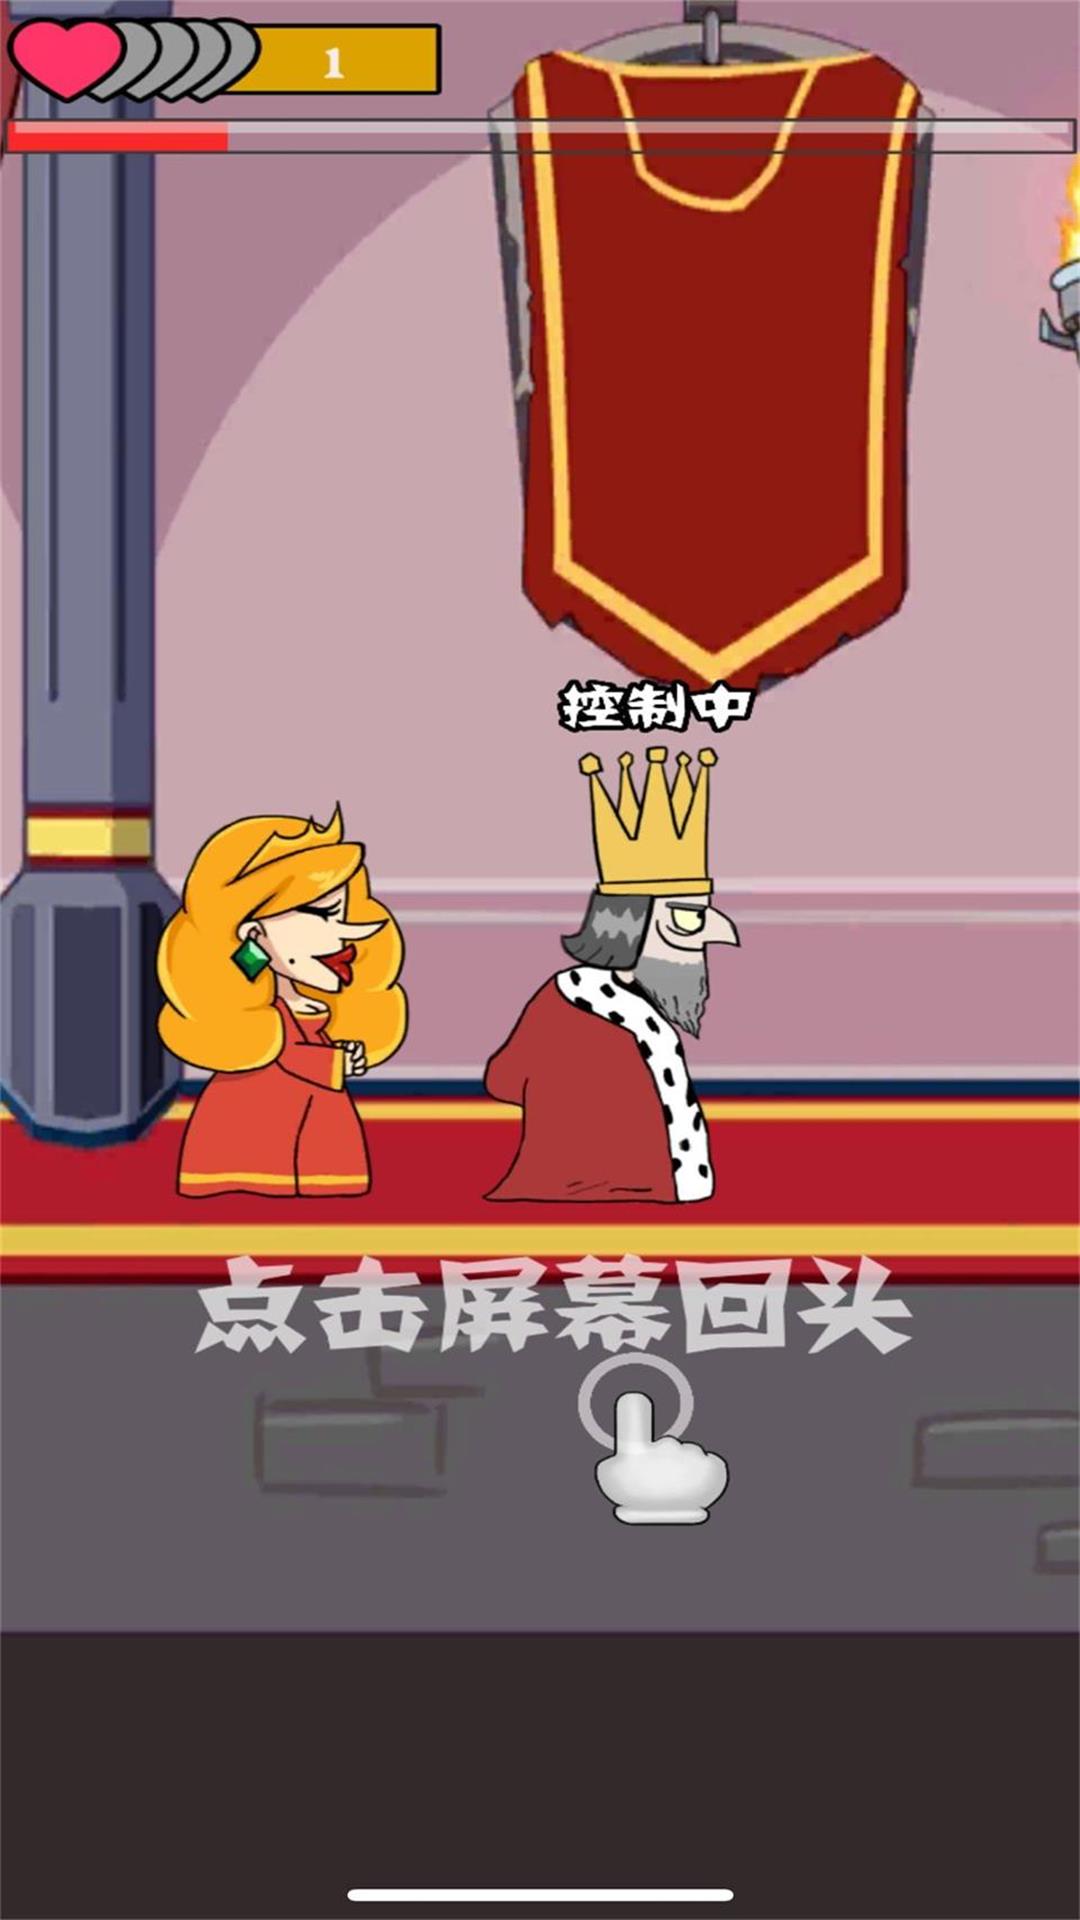 我要当国王中文版游戏下载官方版图片1